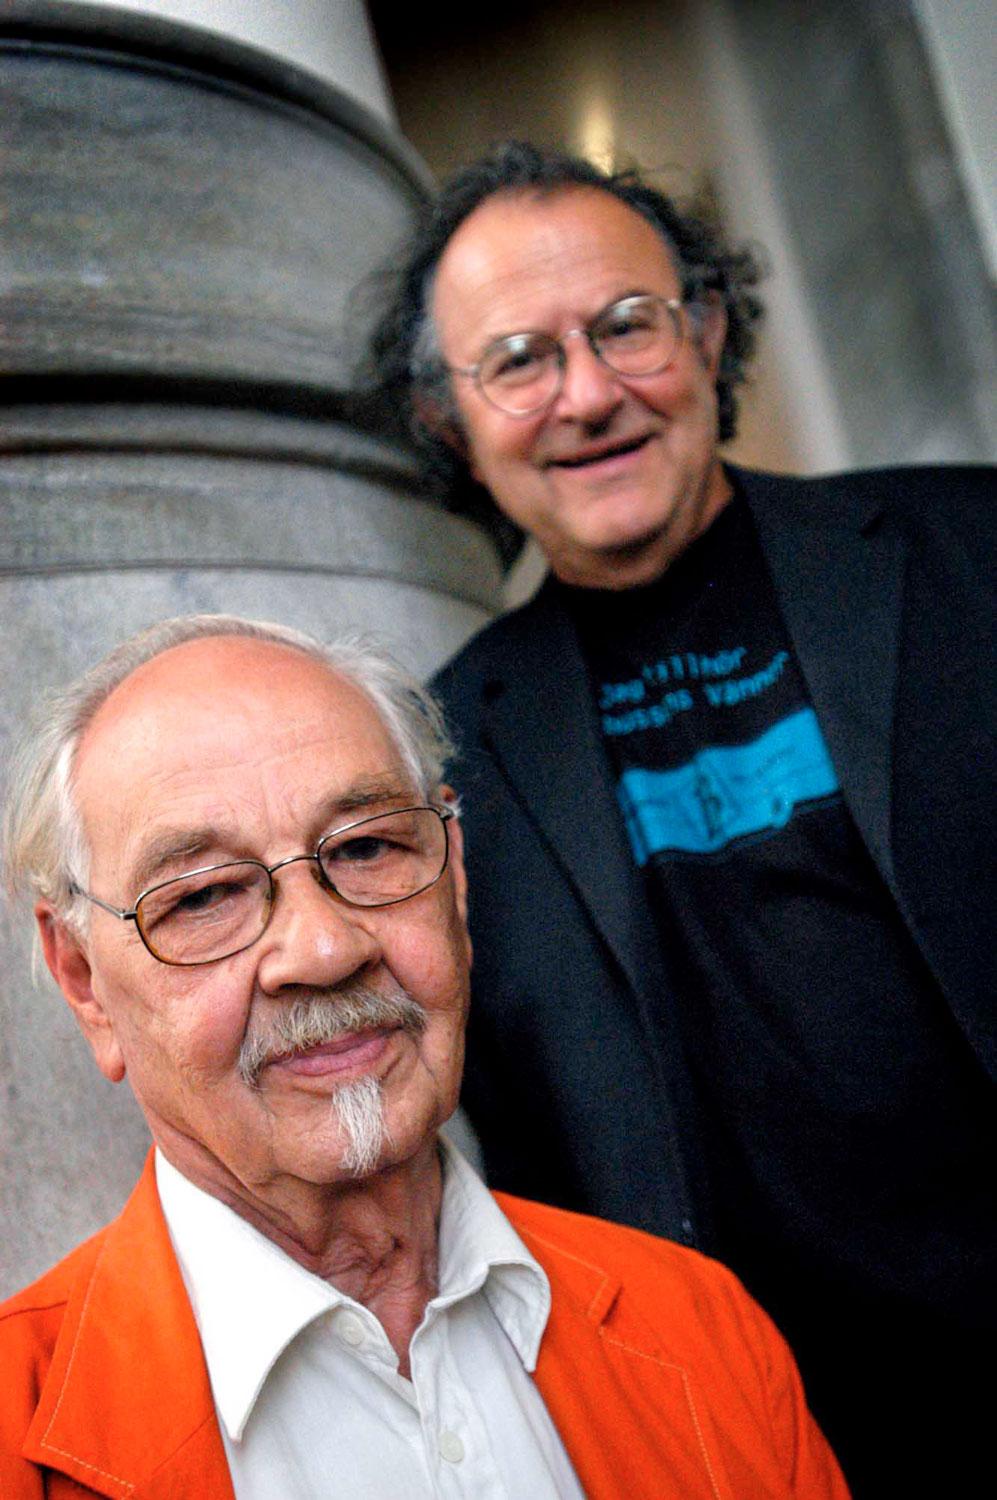 I samband med att boken Trollringen gjordes till musik togs den här bilden. Georg Riedel, till höger, stod för musiken.